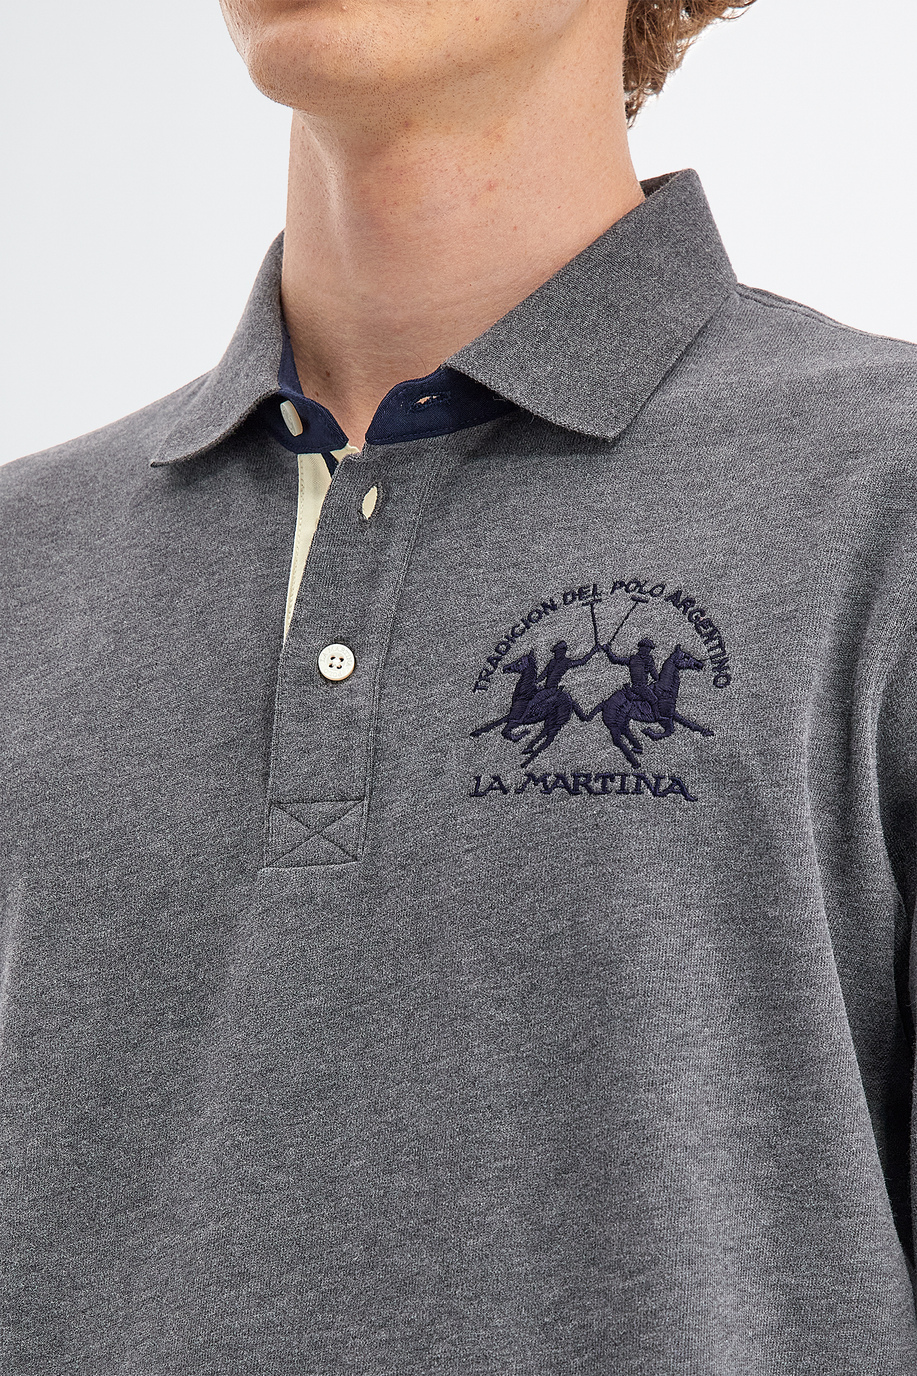 Herren-Poloshirt aus Baumwolljersey mit langen Ärmeln - Slim fit | La Martina - Official Online Shop